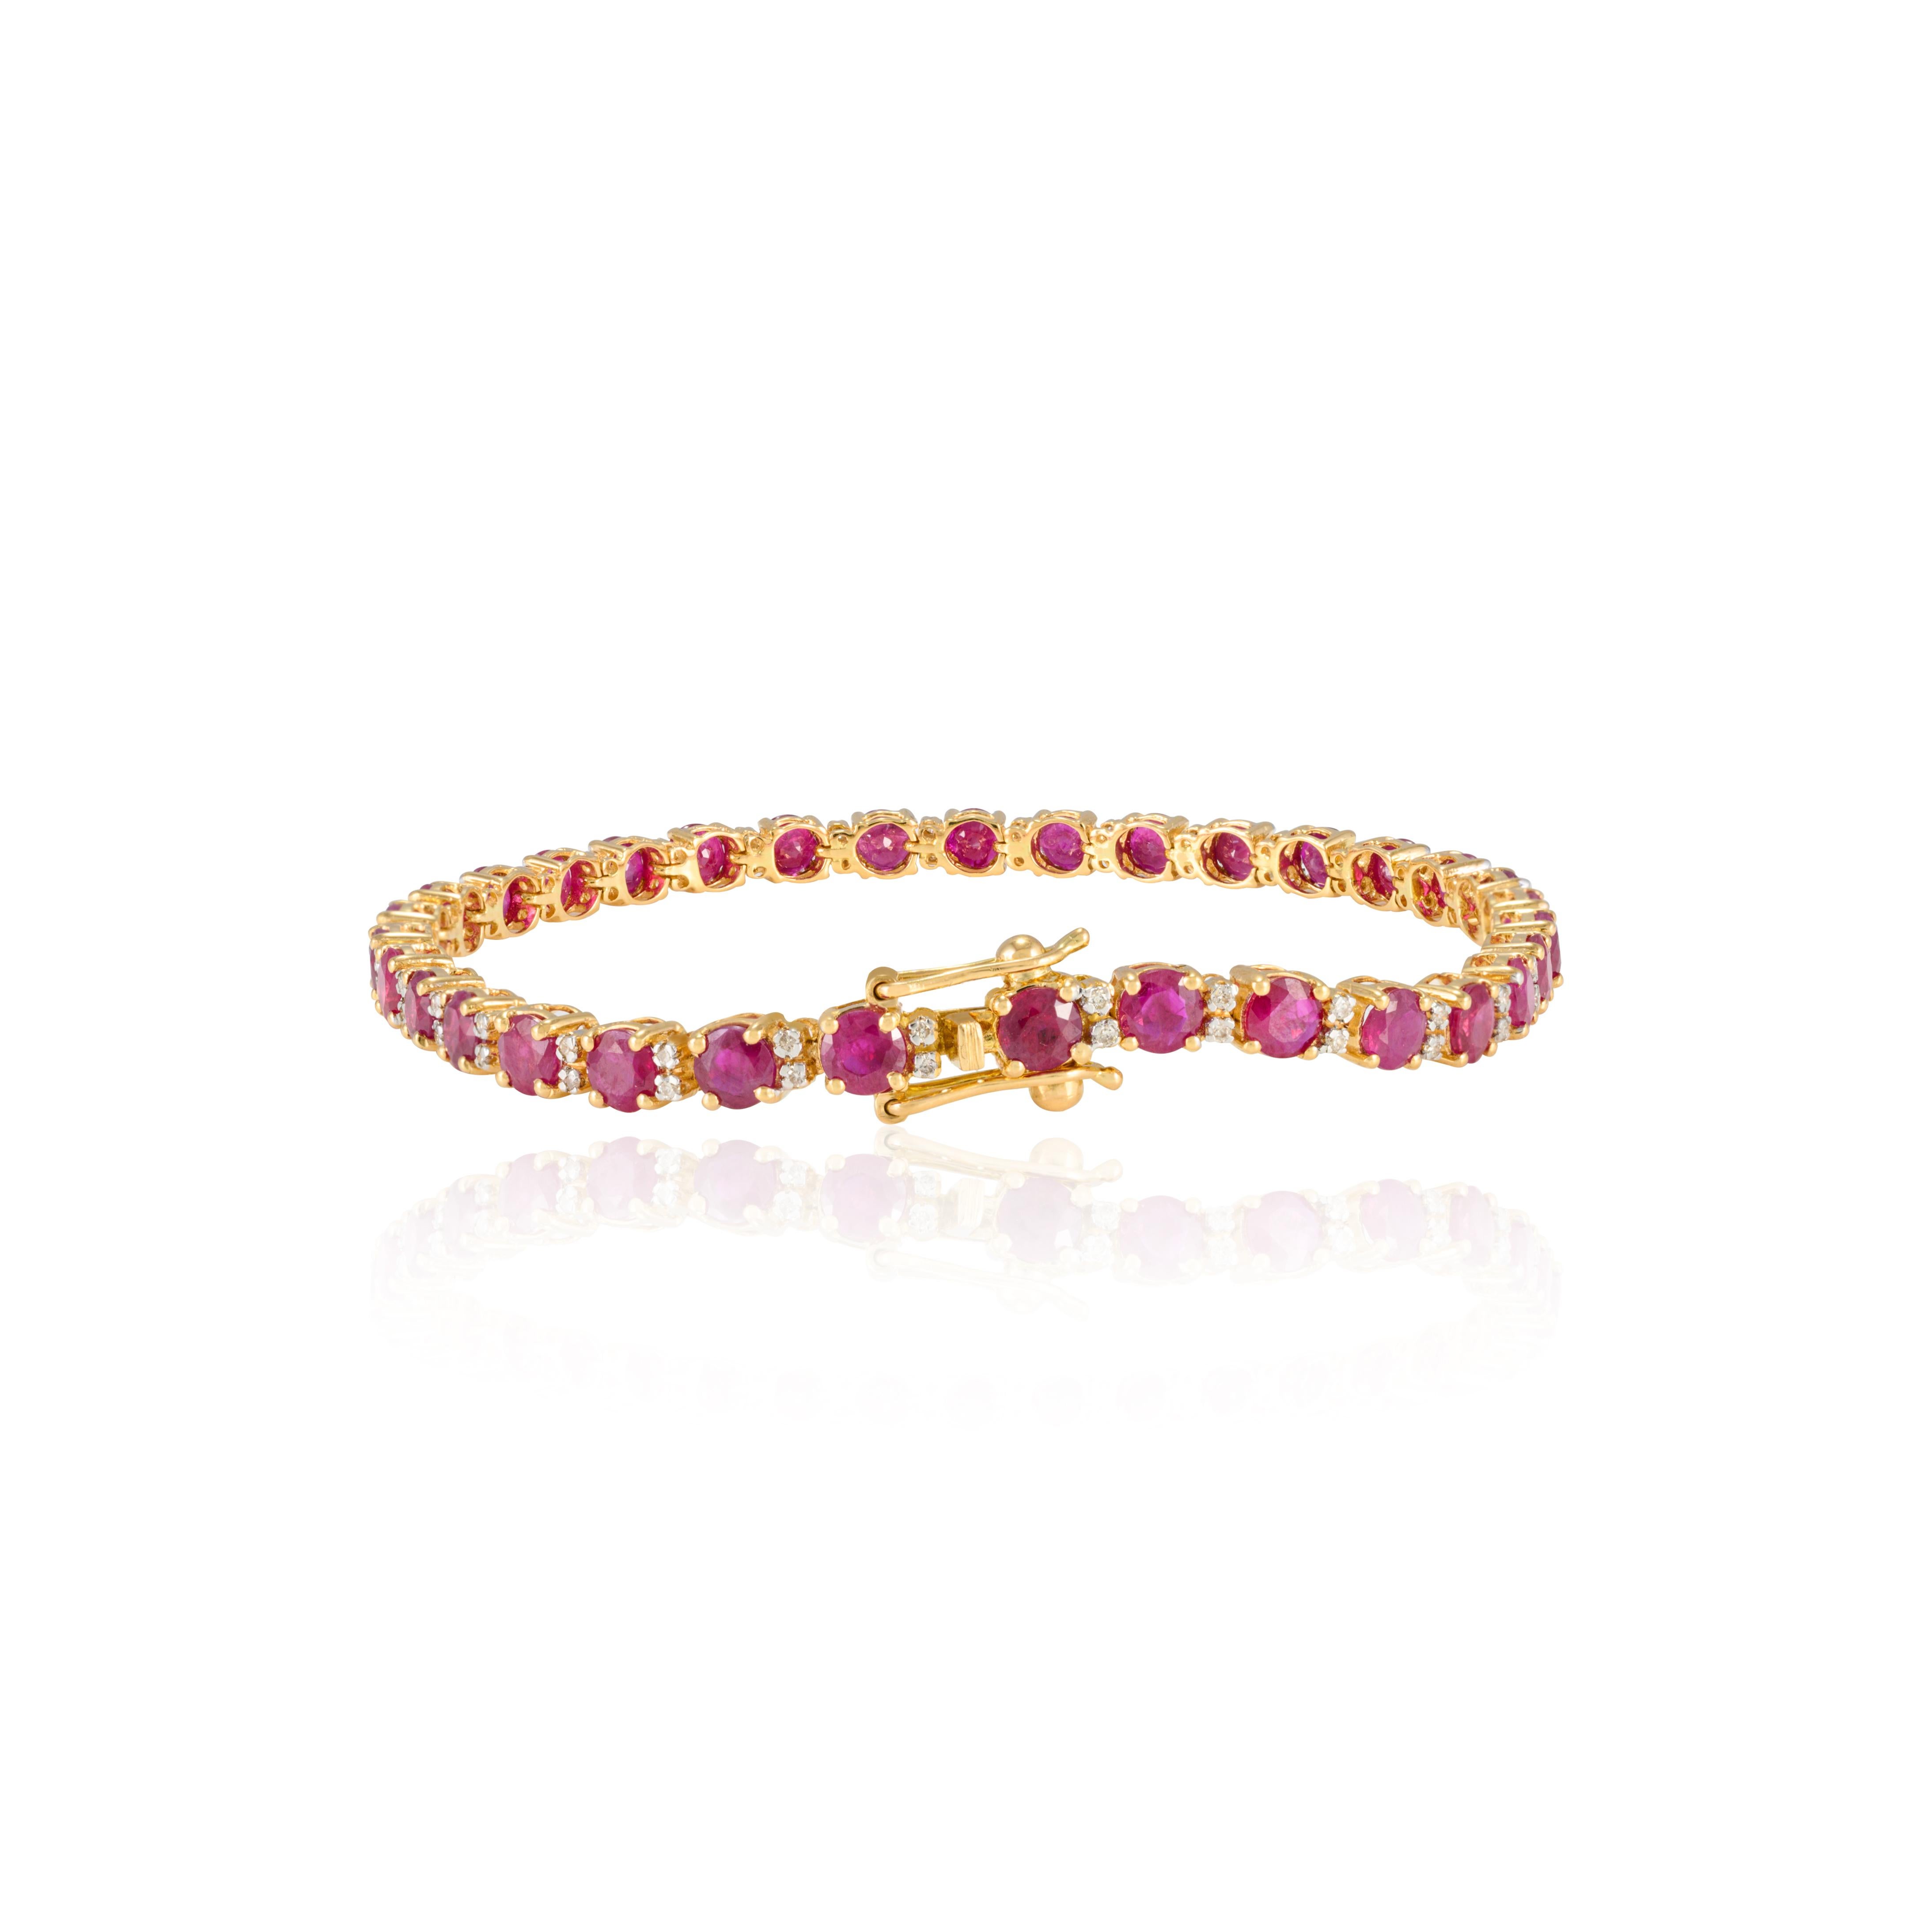 Ce bracelet de tennis en or 18 carats orné de rubis naturels et de diamants met en valeur 9,27 carats de rubis naturels étincelant à l'infini et 0,34 carats de diamants. Il mesure 7 pouces de long. 
Le rubis améliore la force mentale. 
Conçue avec